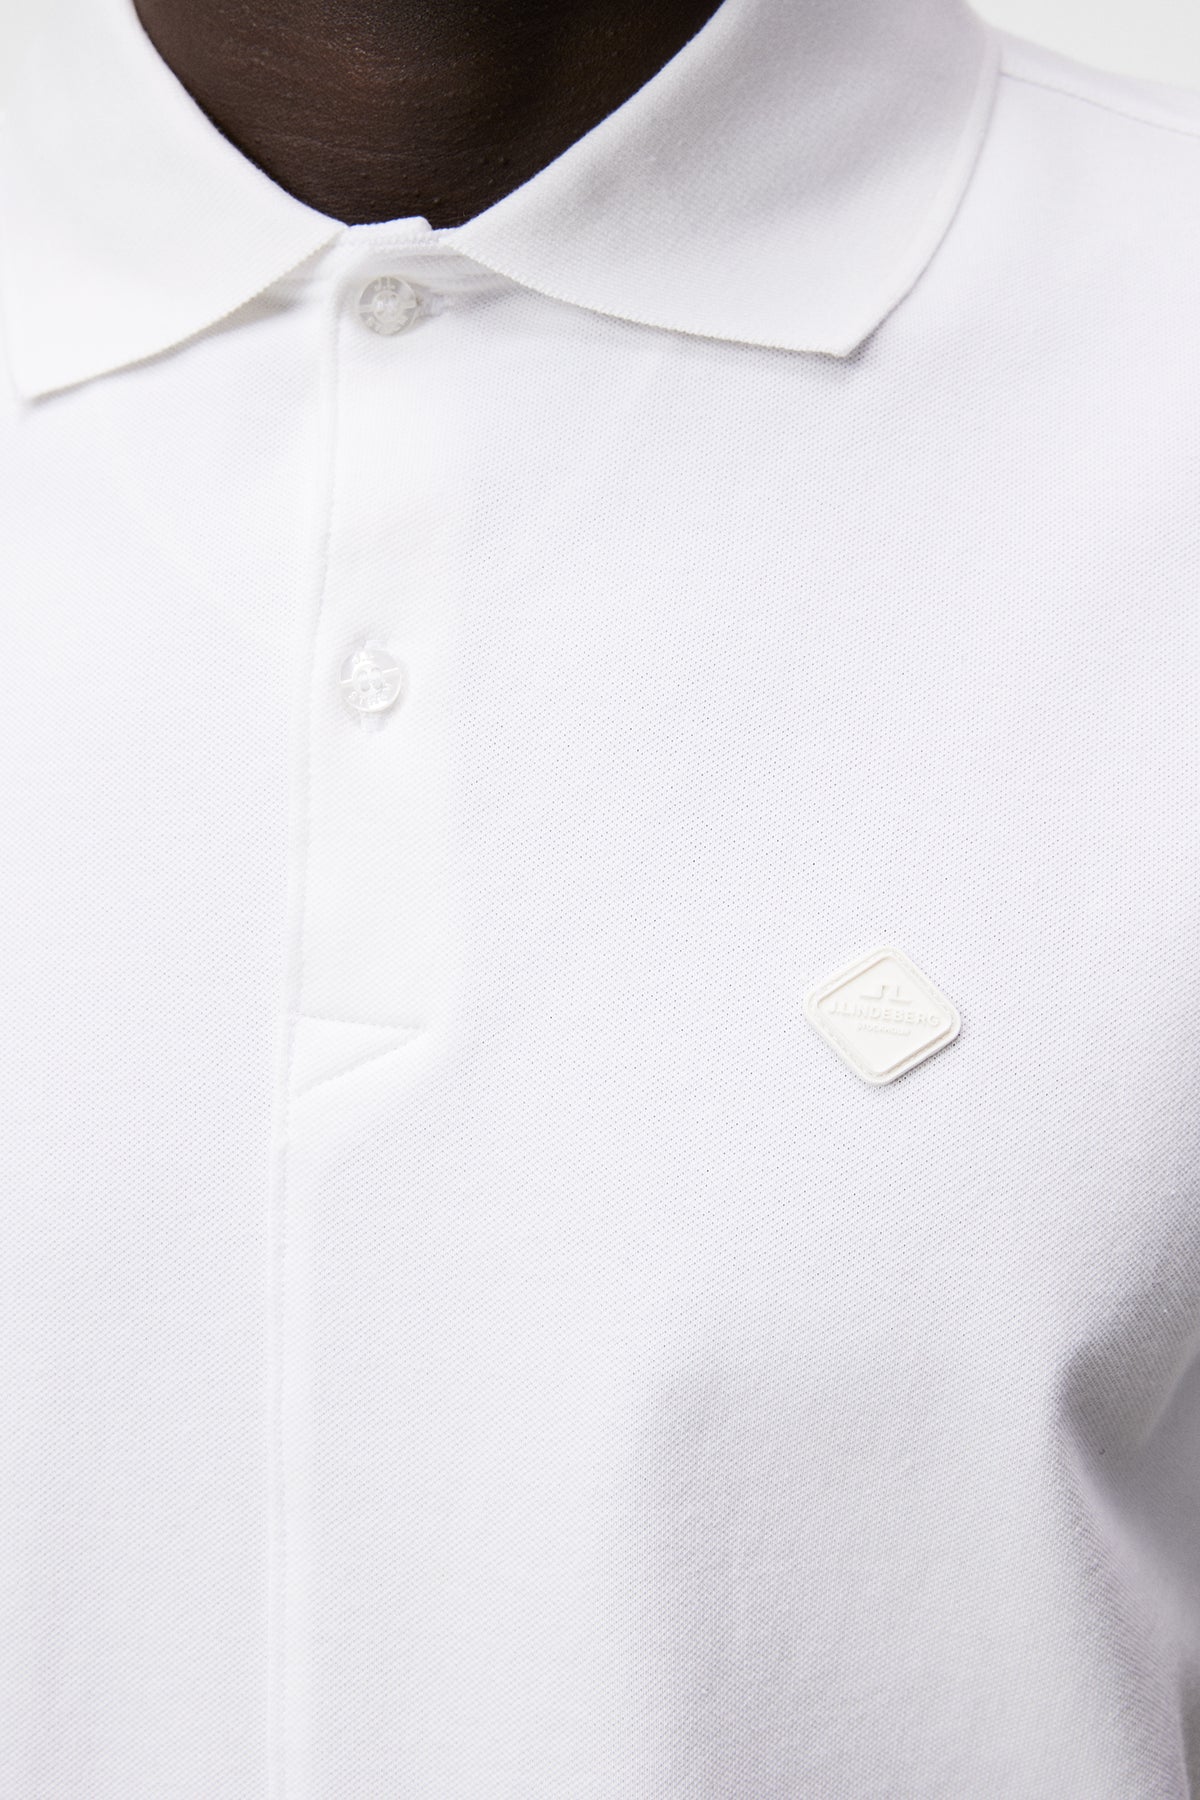 Rubi Slim Polo Shirt / White